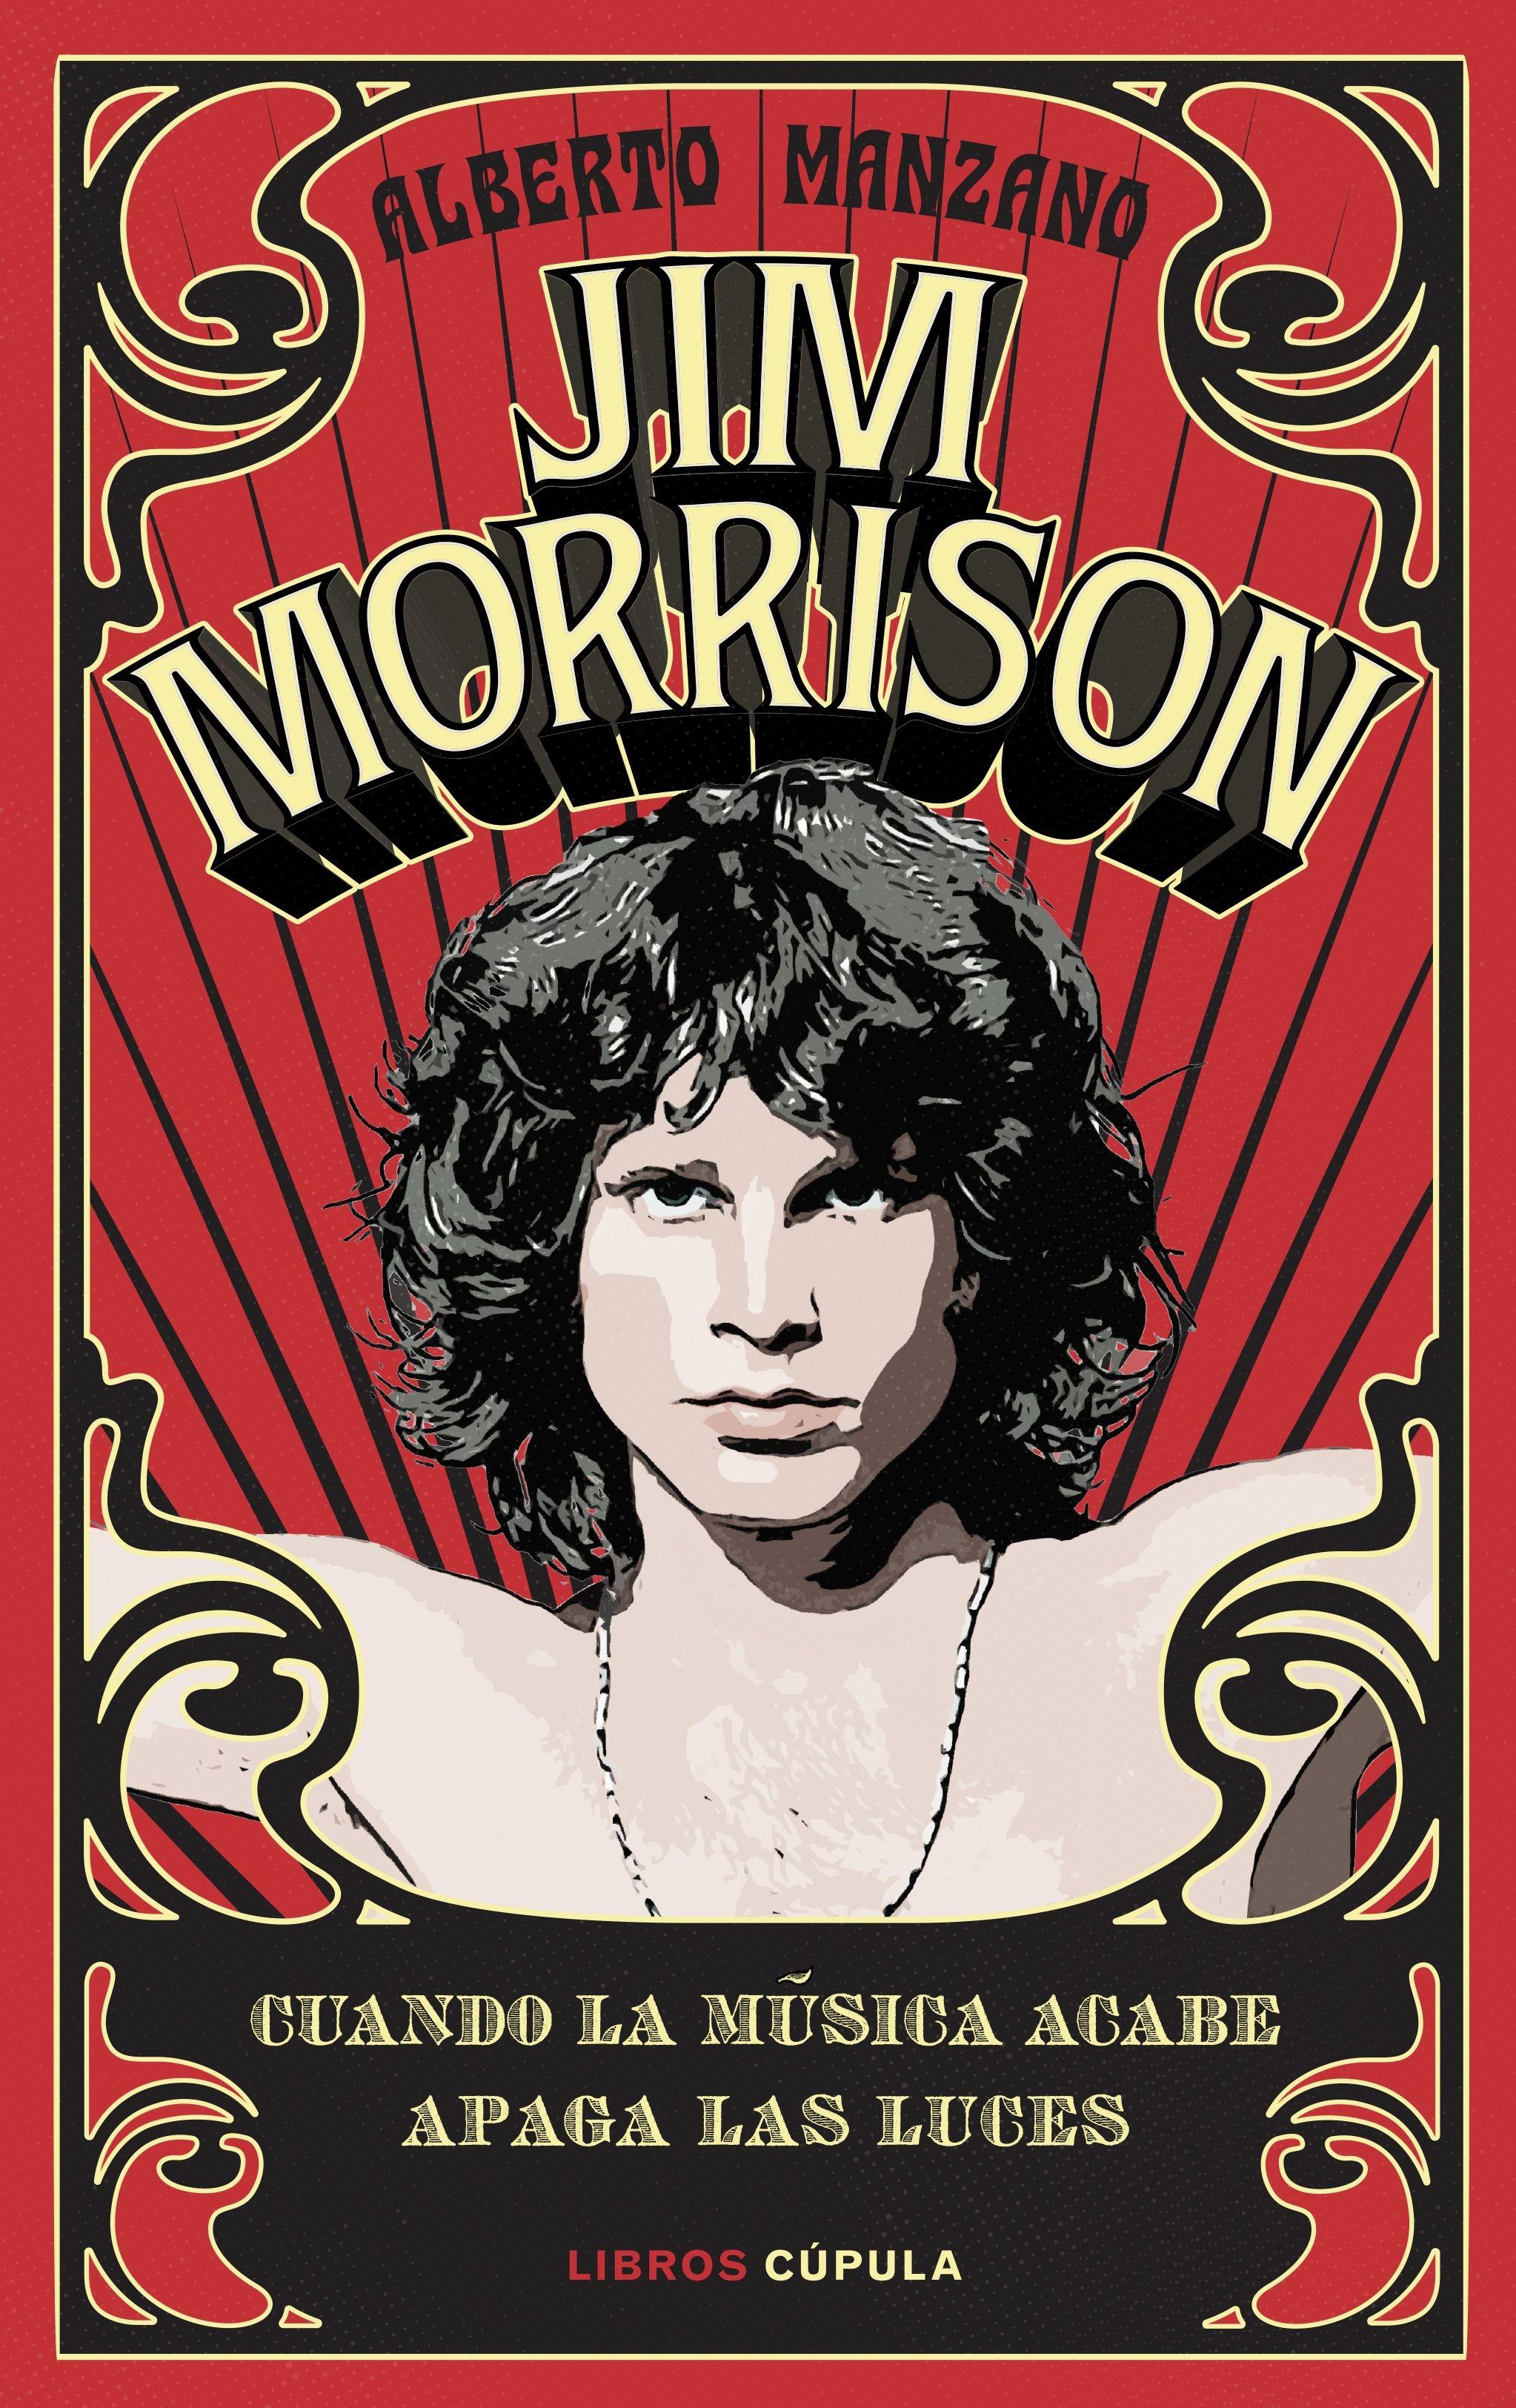 Jim Morrison "Cuando la música acabe apaga las luces"